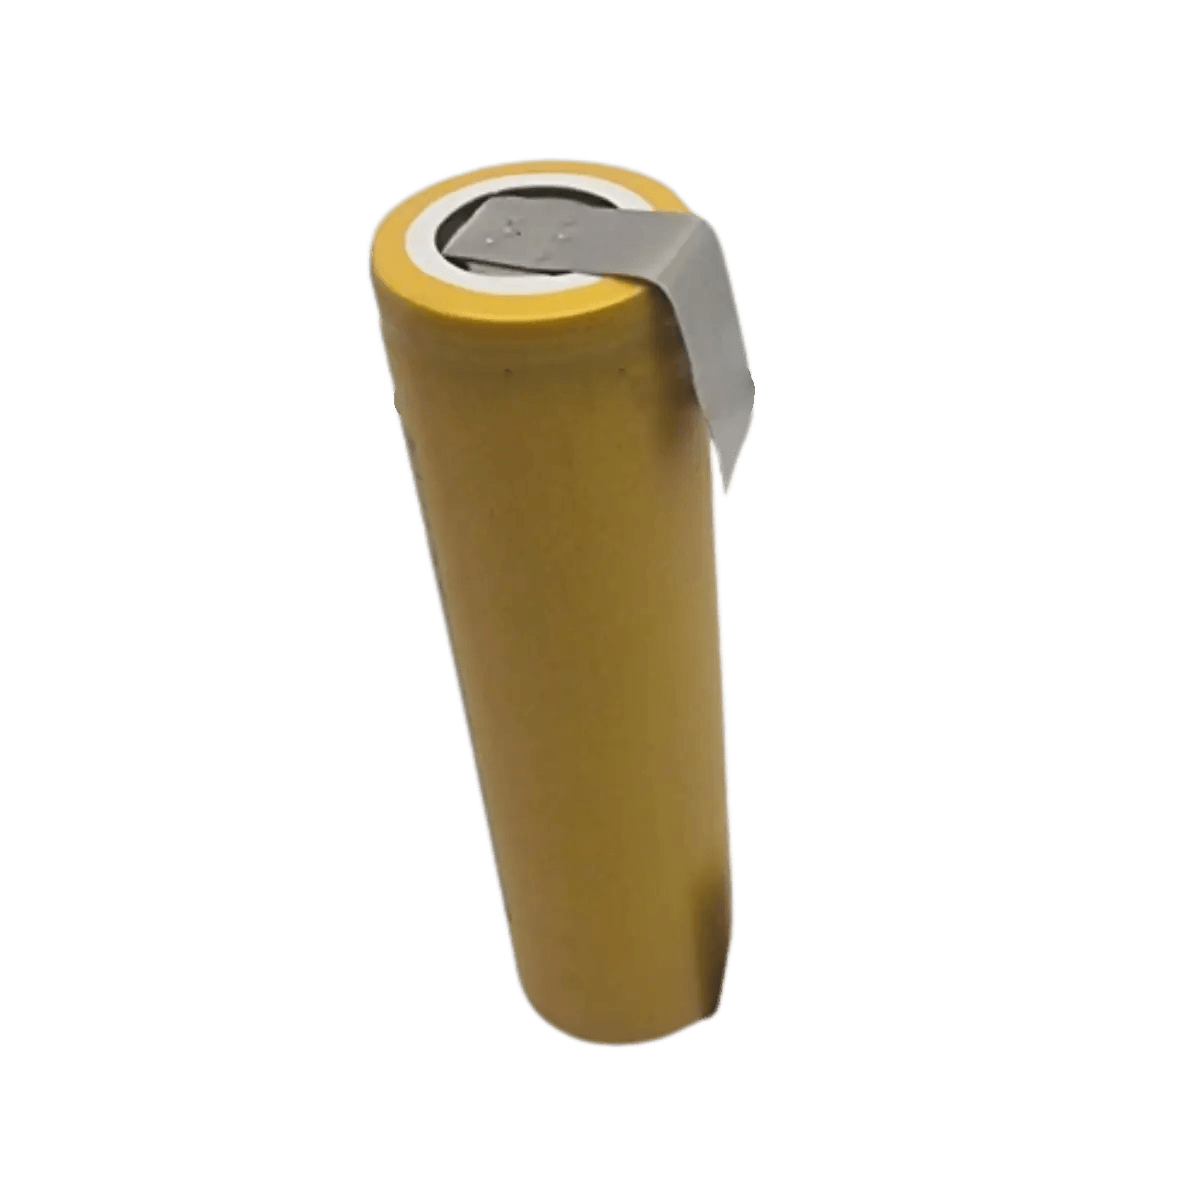 Batterie 18650 Lifepo4 3.2v 1500mAh Languettes pour Assemblage.